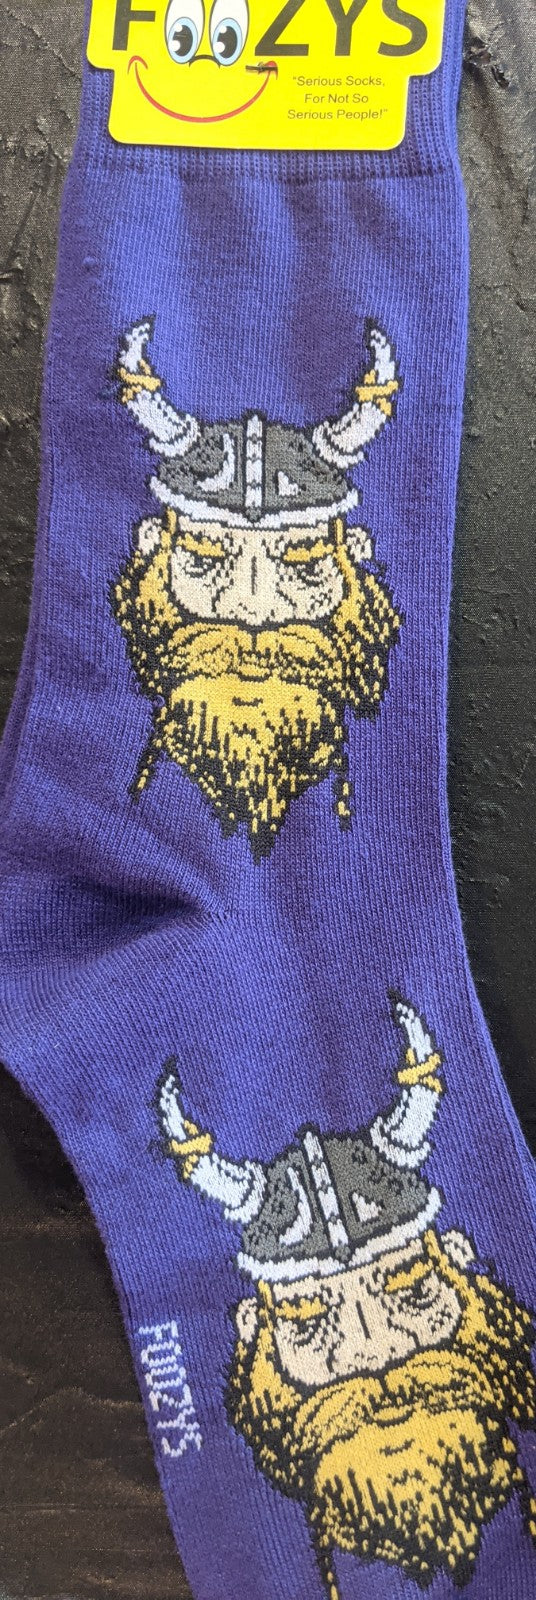 Minnesota Vikings Men's Socks